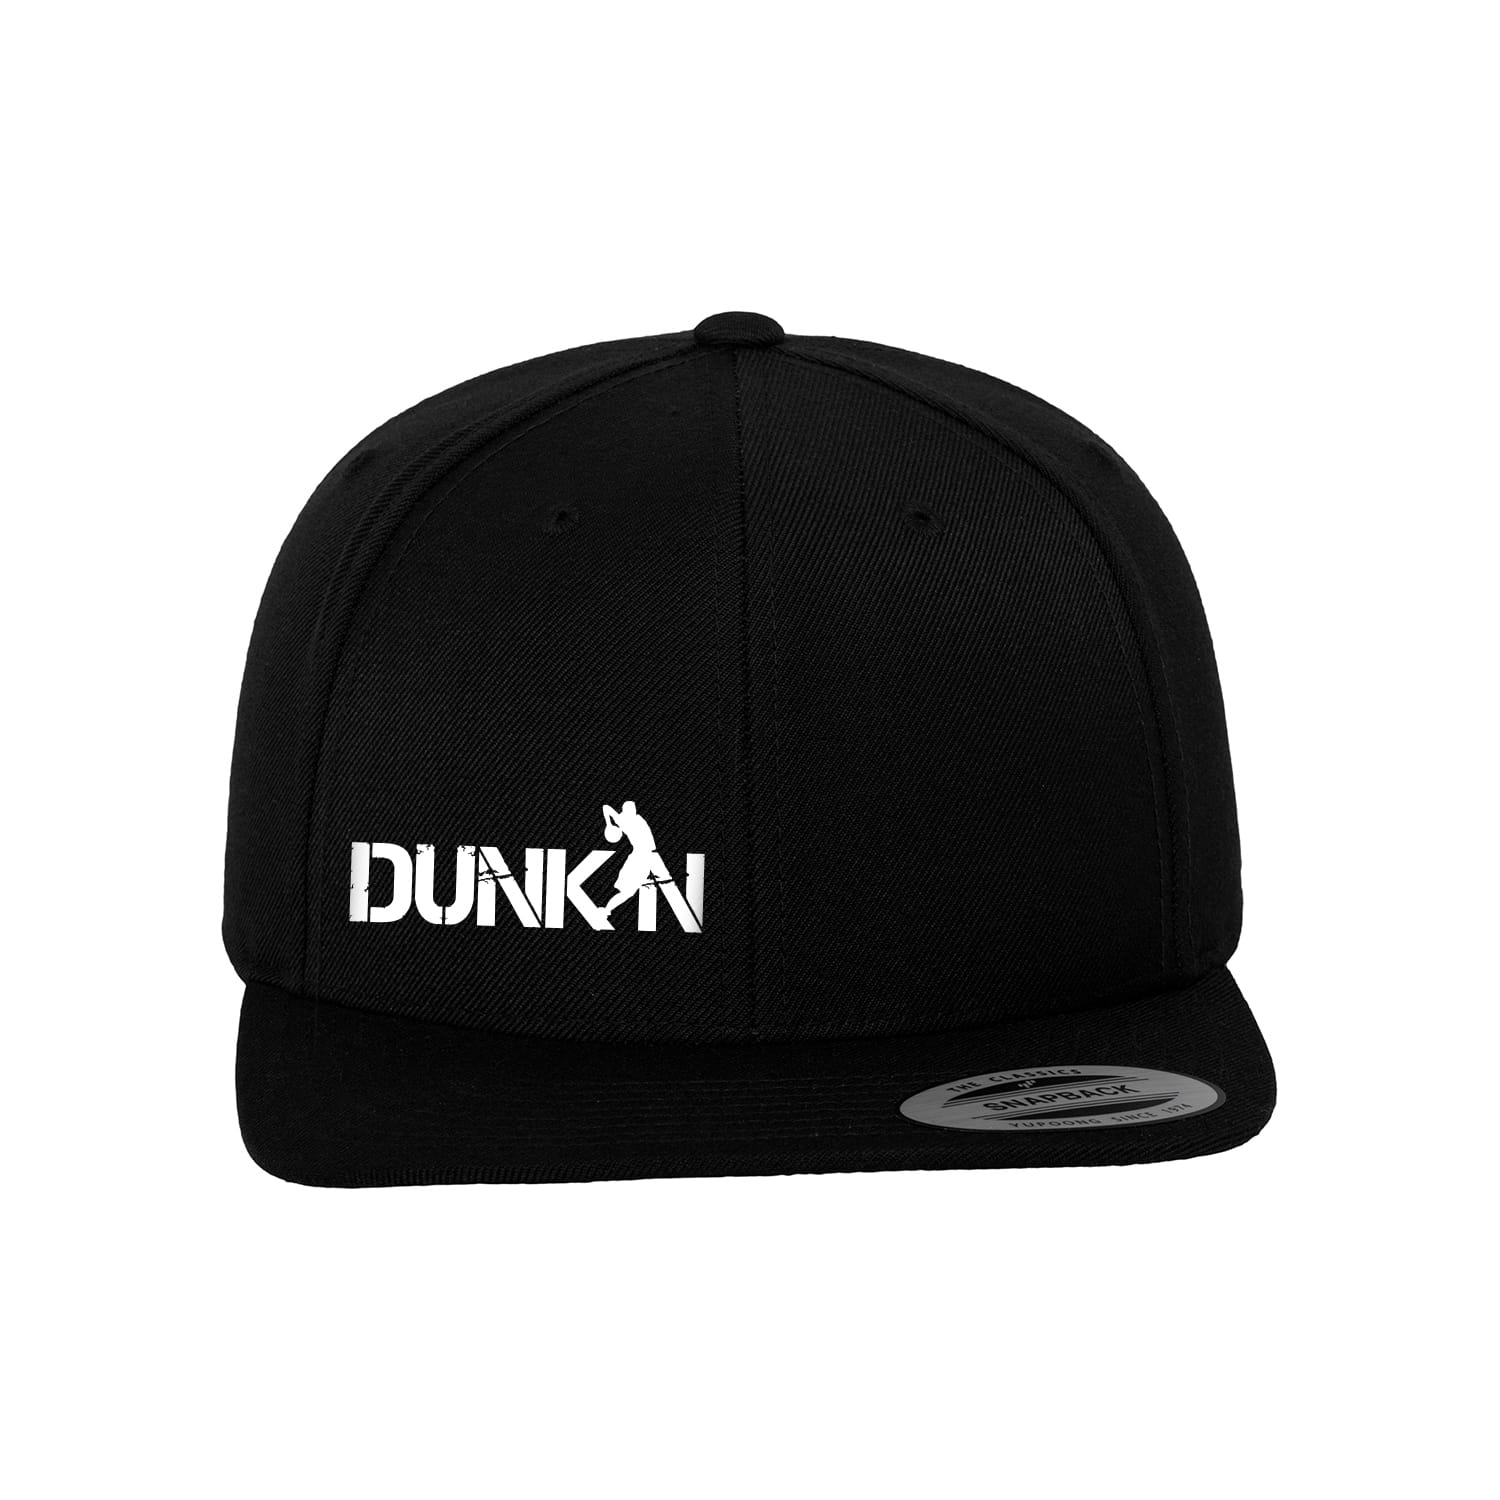 Cap "Dunkin"